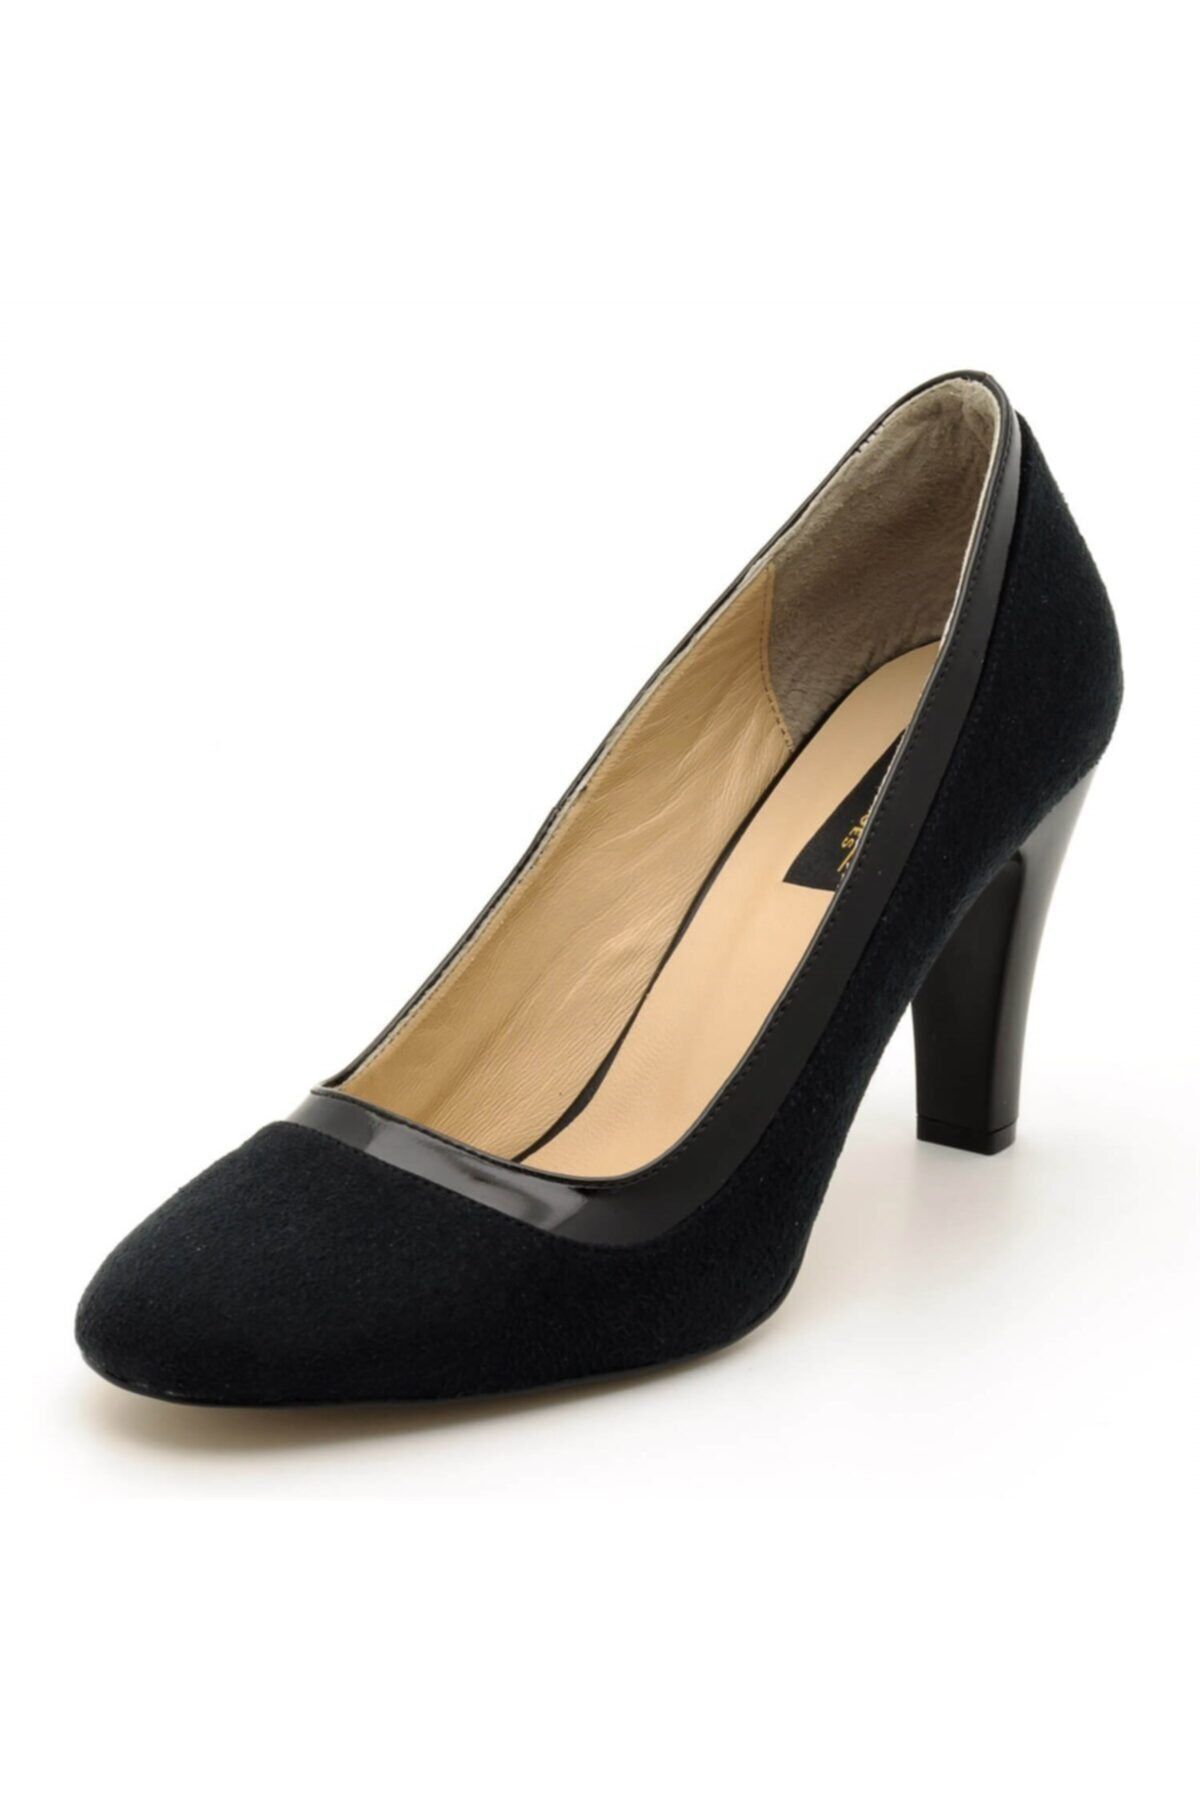 İriadam 1973 Siyah Süet Büyük Numara Kadın Ayakkabıları